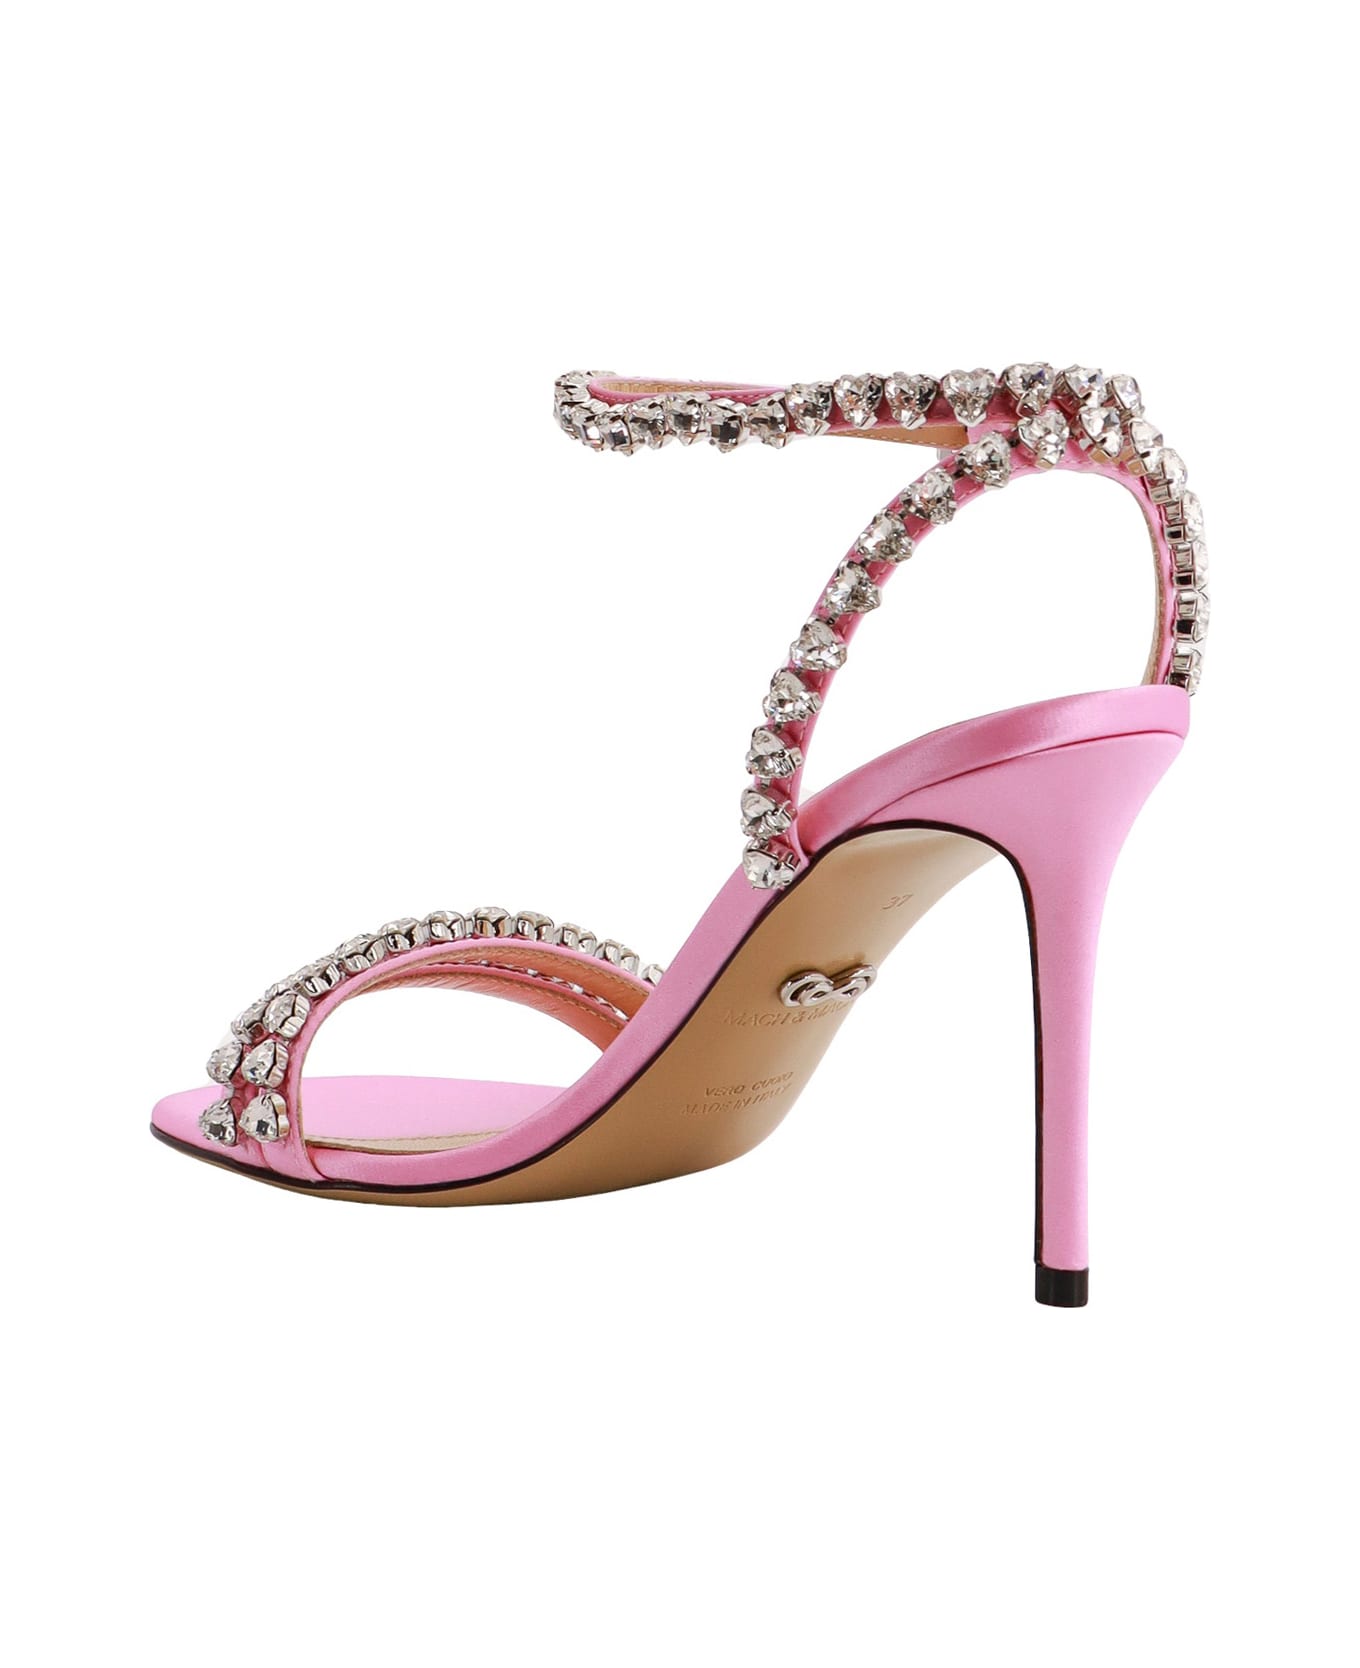 Mach & Mach Sandals - Pink